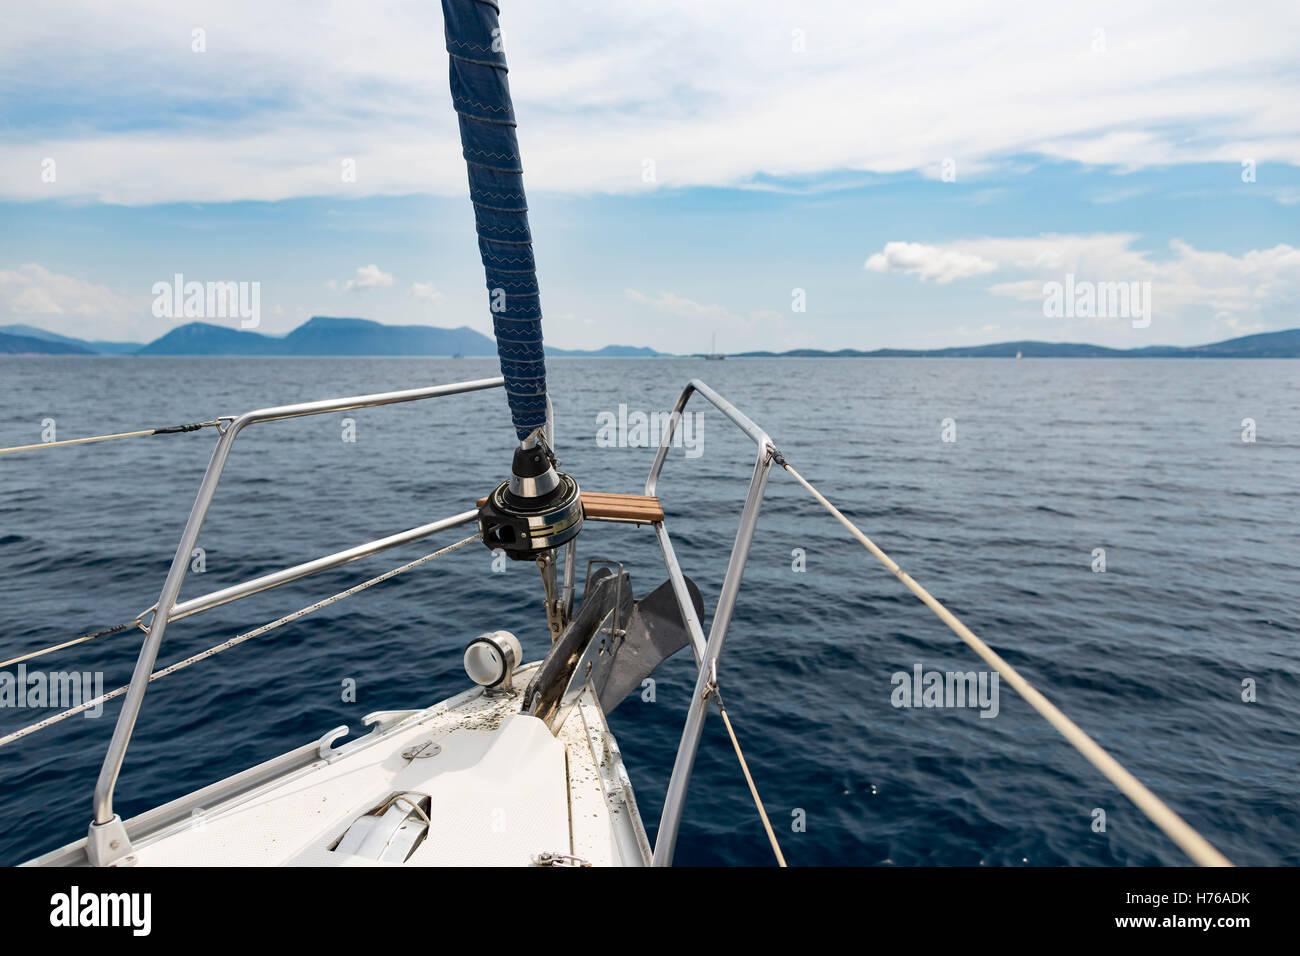 Bow of a sailing boat, Lefkada, greece Stock Photo